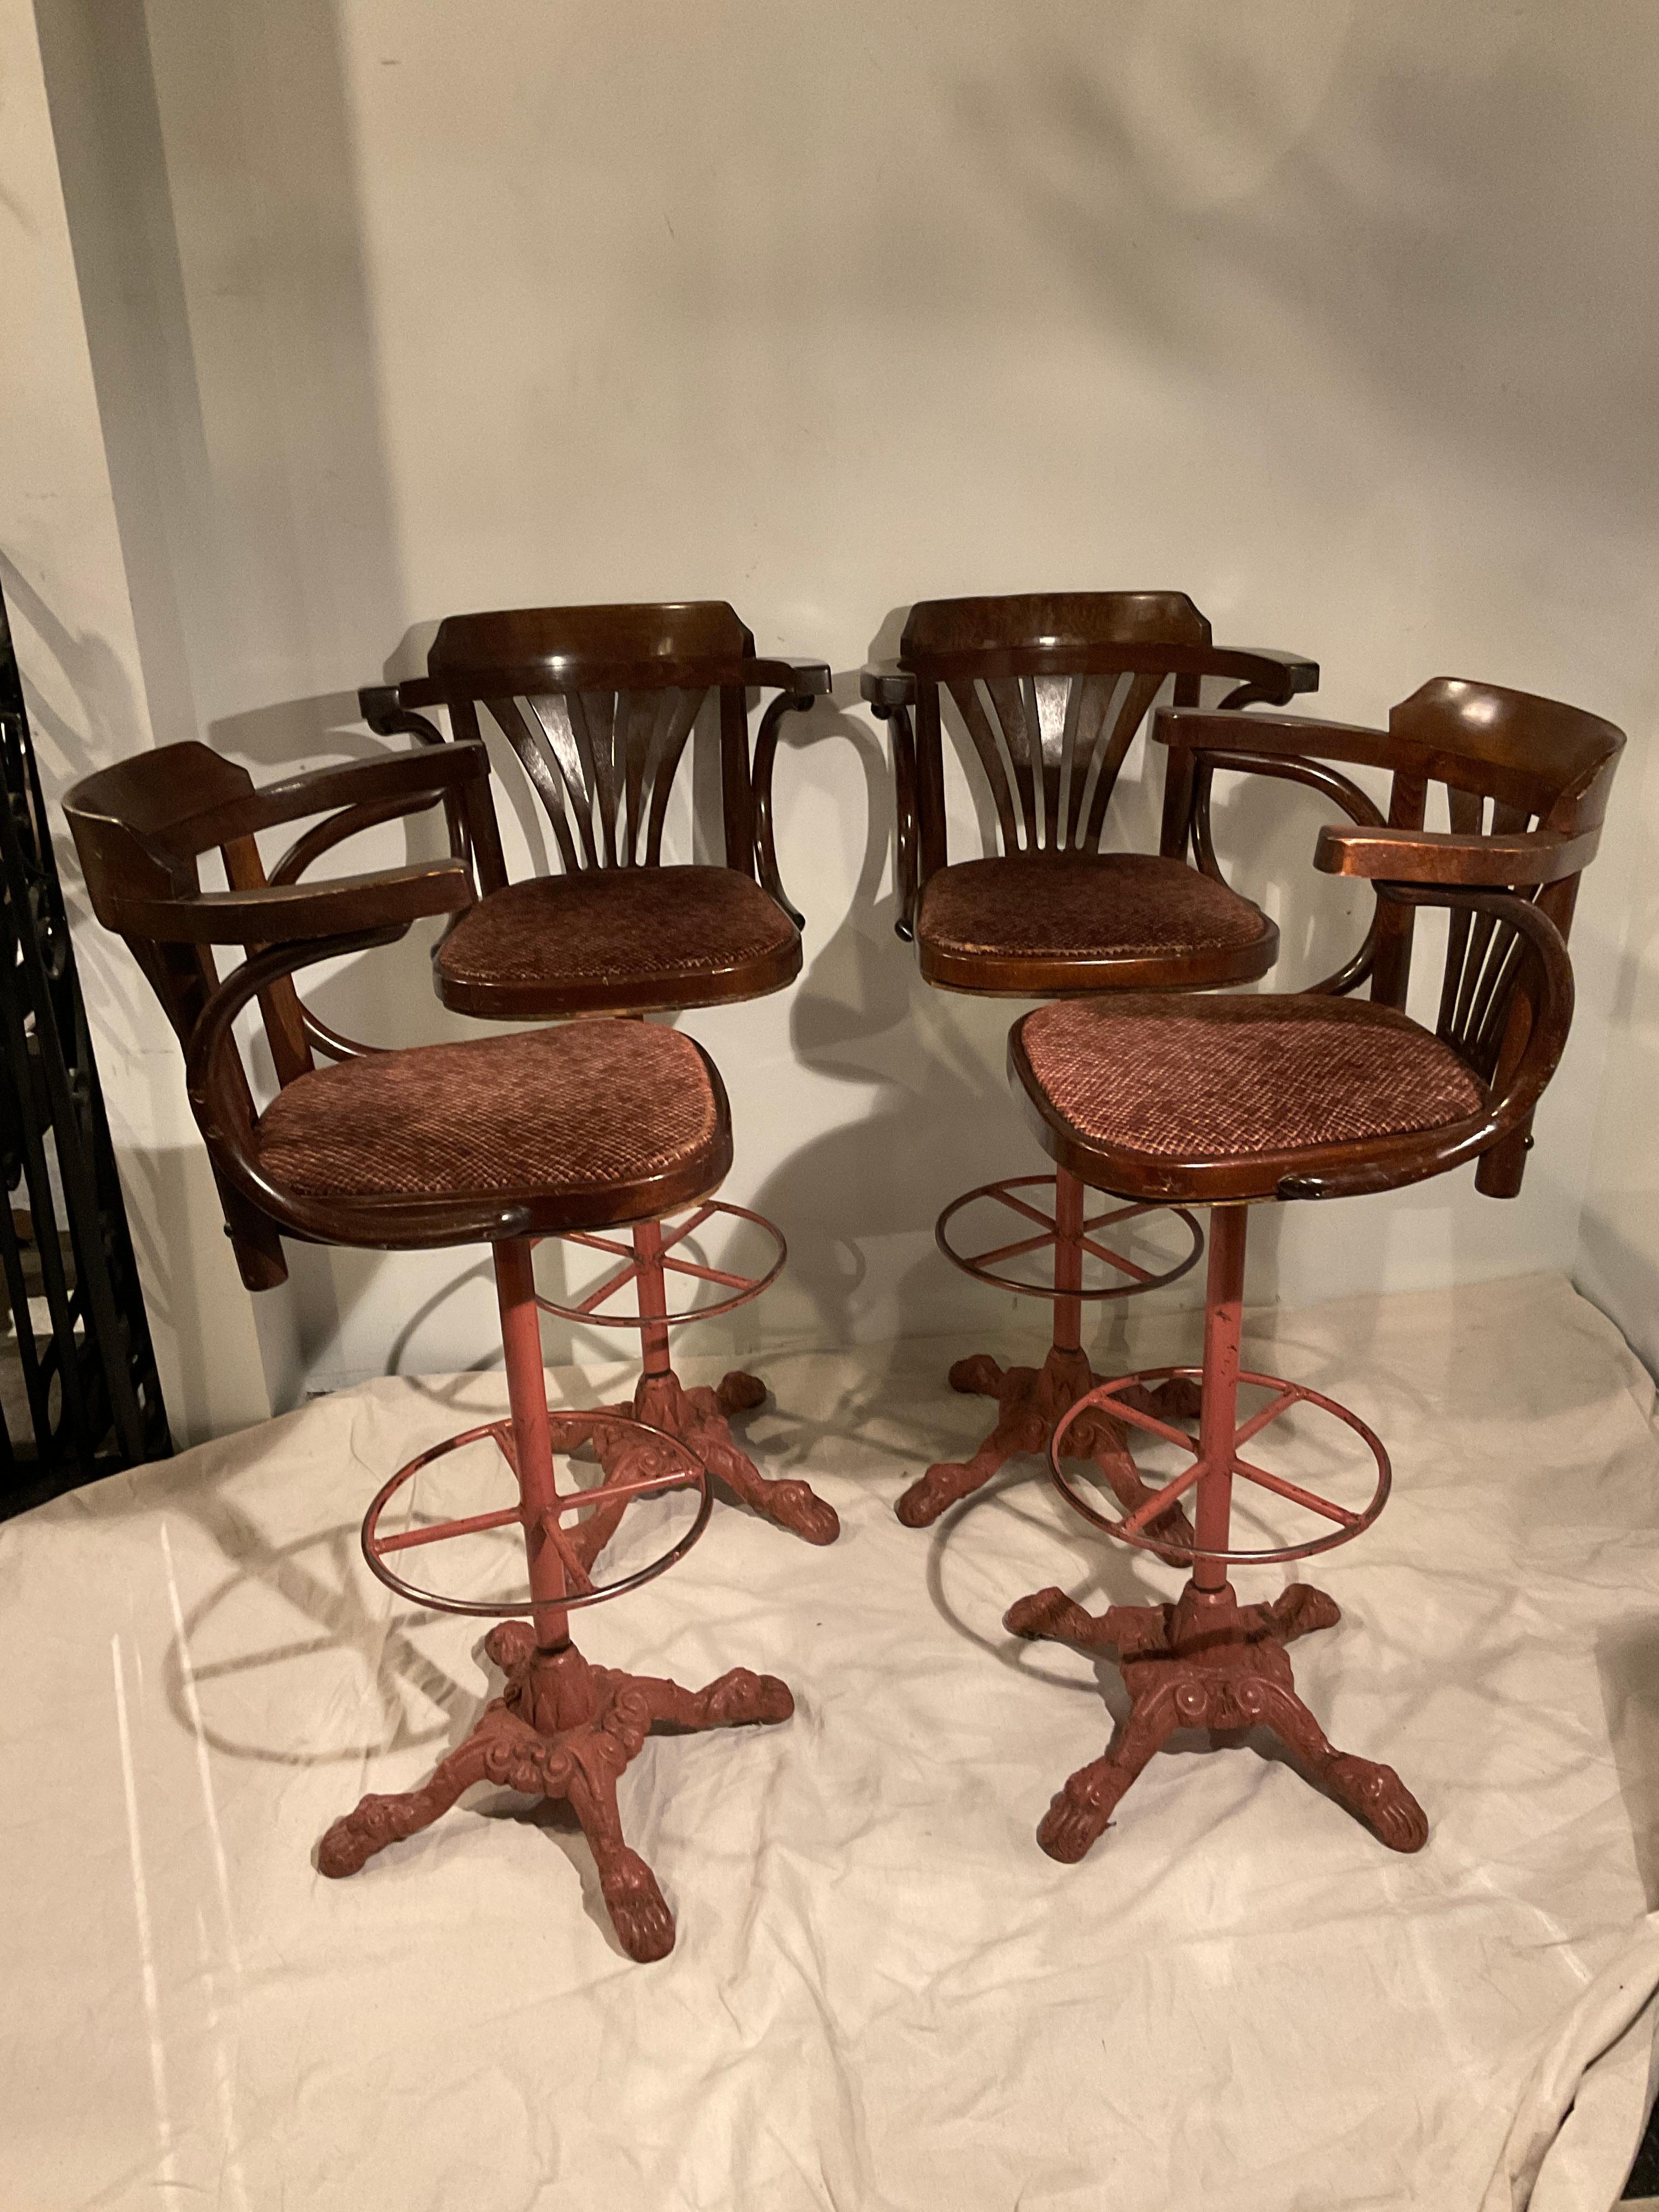 Vier drehbare Barhocker aus Holz der 1920er Jahre auf Eisenfüßen. Bei einem Stuhl fehlt das Furnier, wie in Abbildung 2 dargestellt.